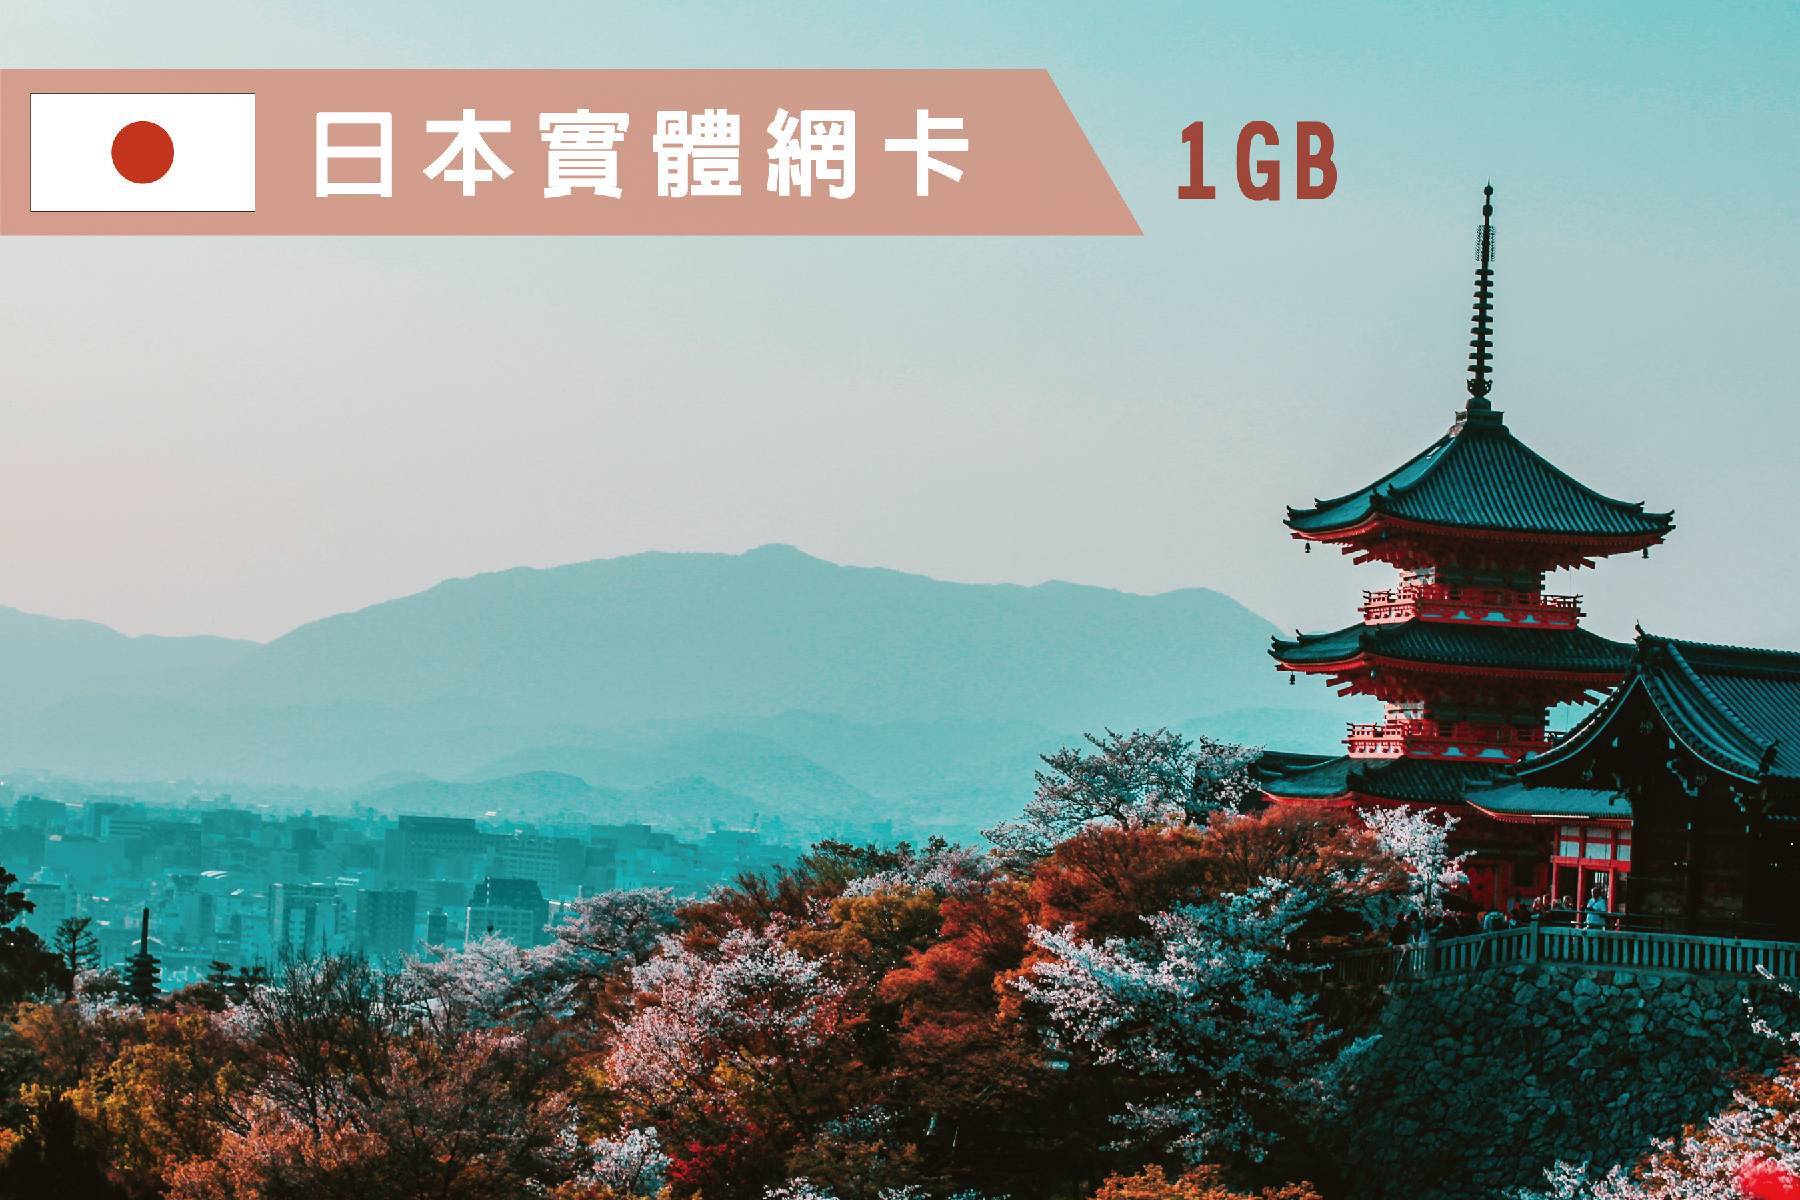 Ⓙ日本-4天每日1GB超過降速吃到飽上網卡1